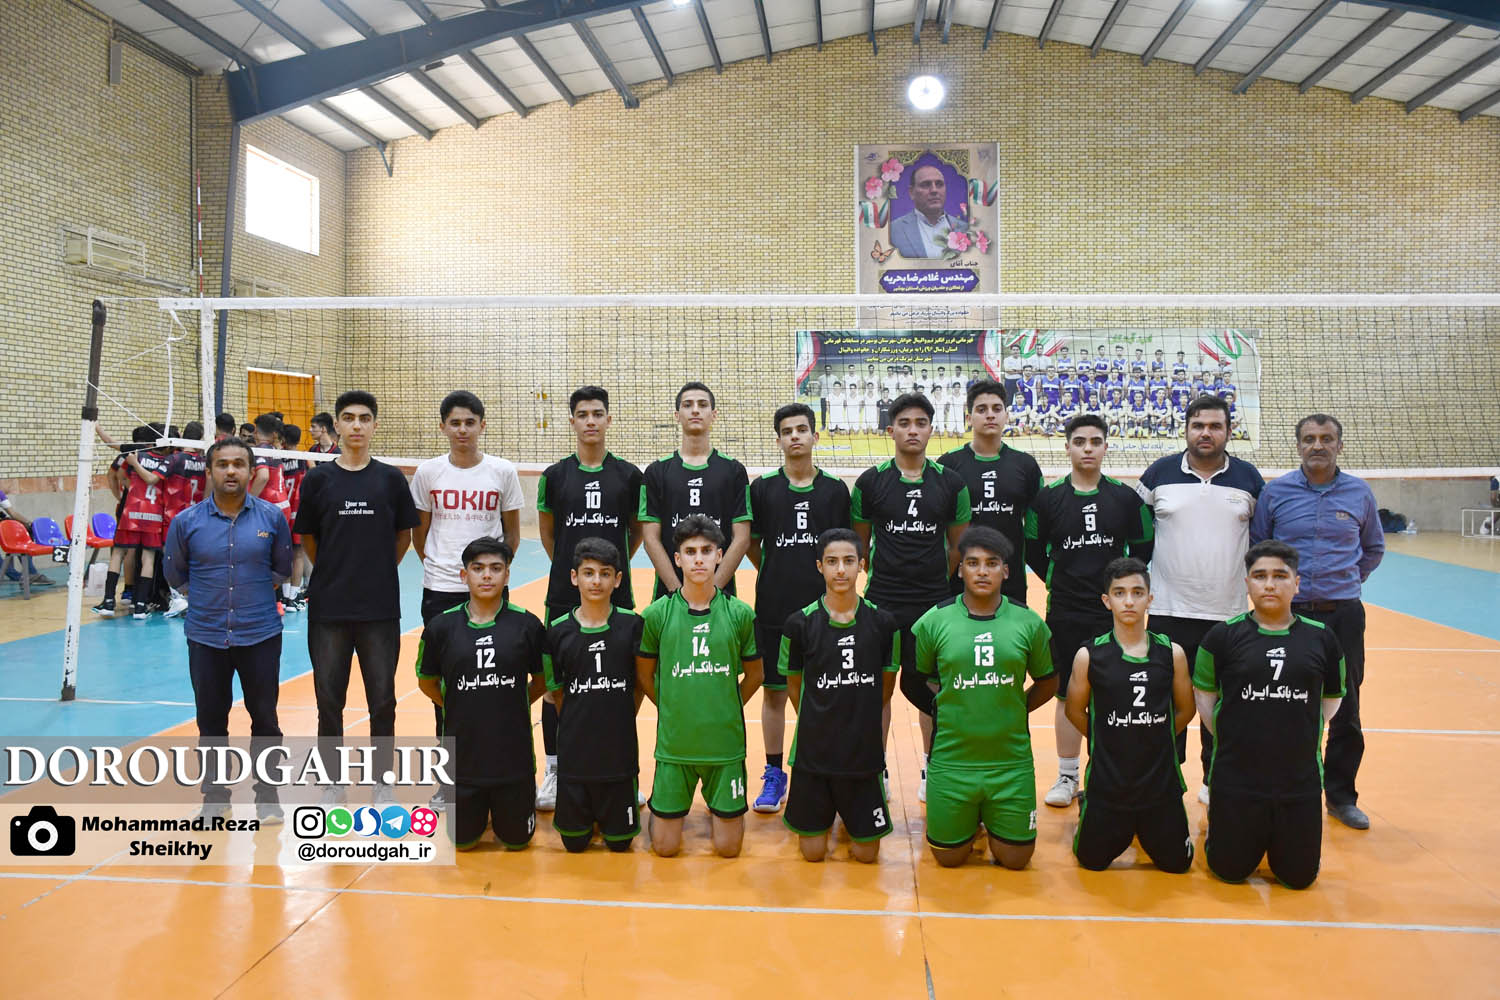 دورودگاه نایب قهرمان مسابقات والیبال نوجوانان استان بوشهر